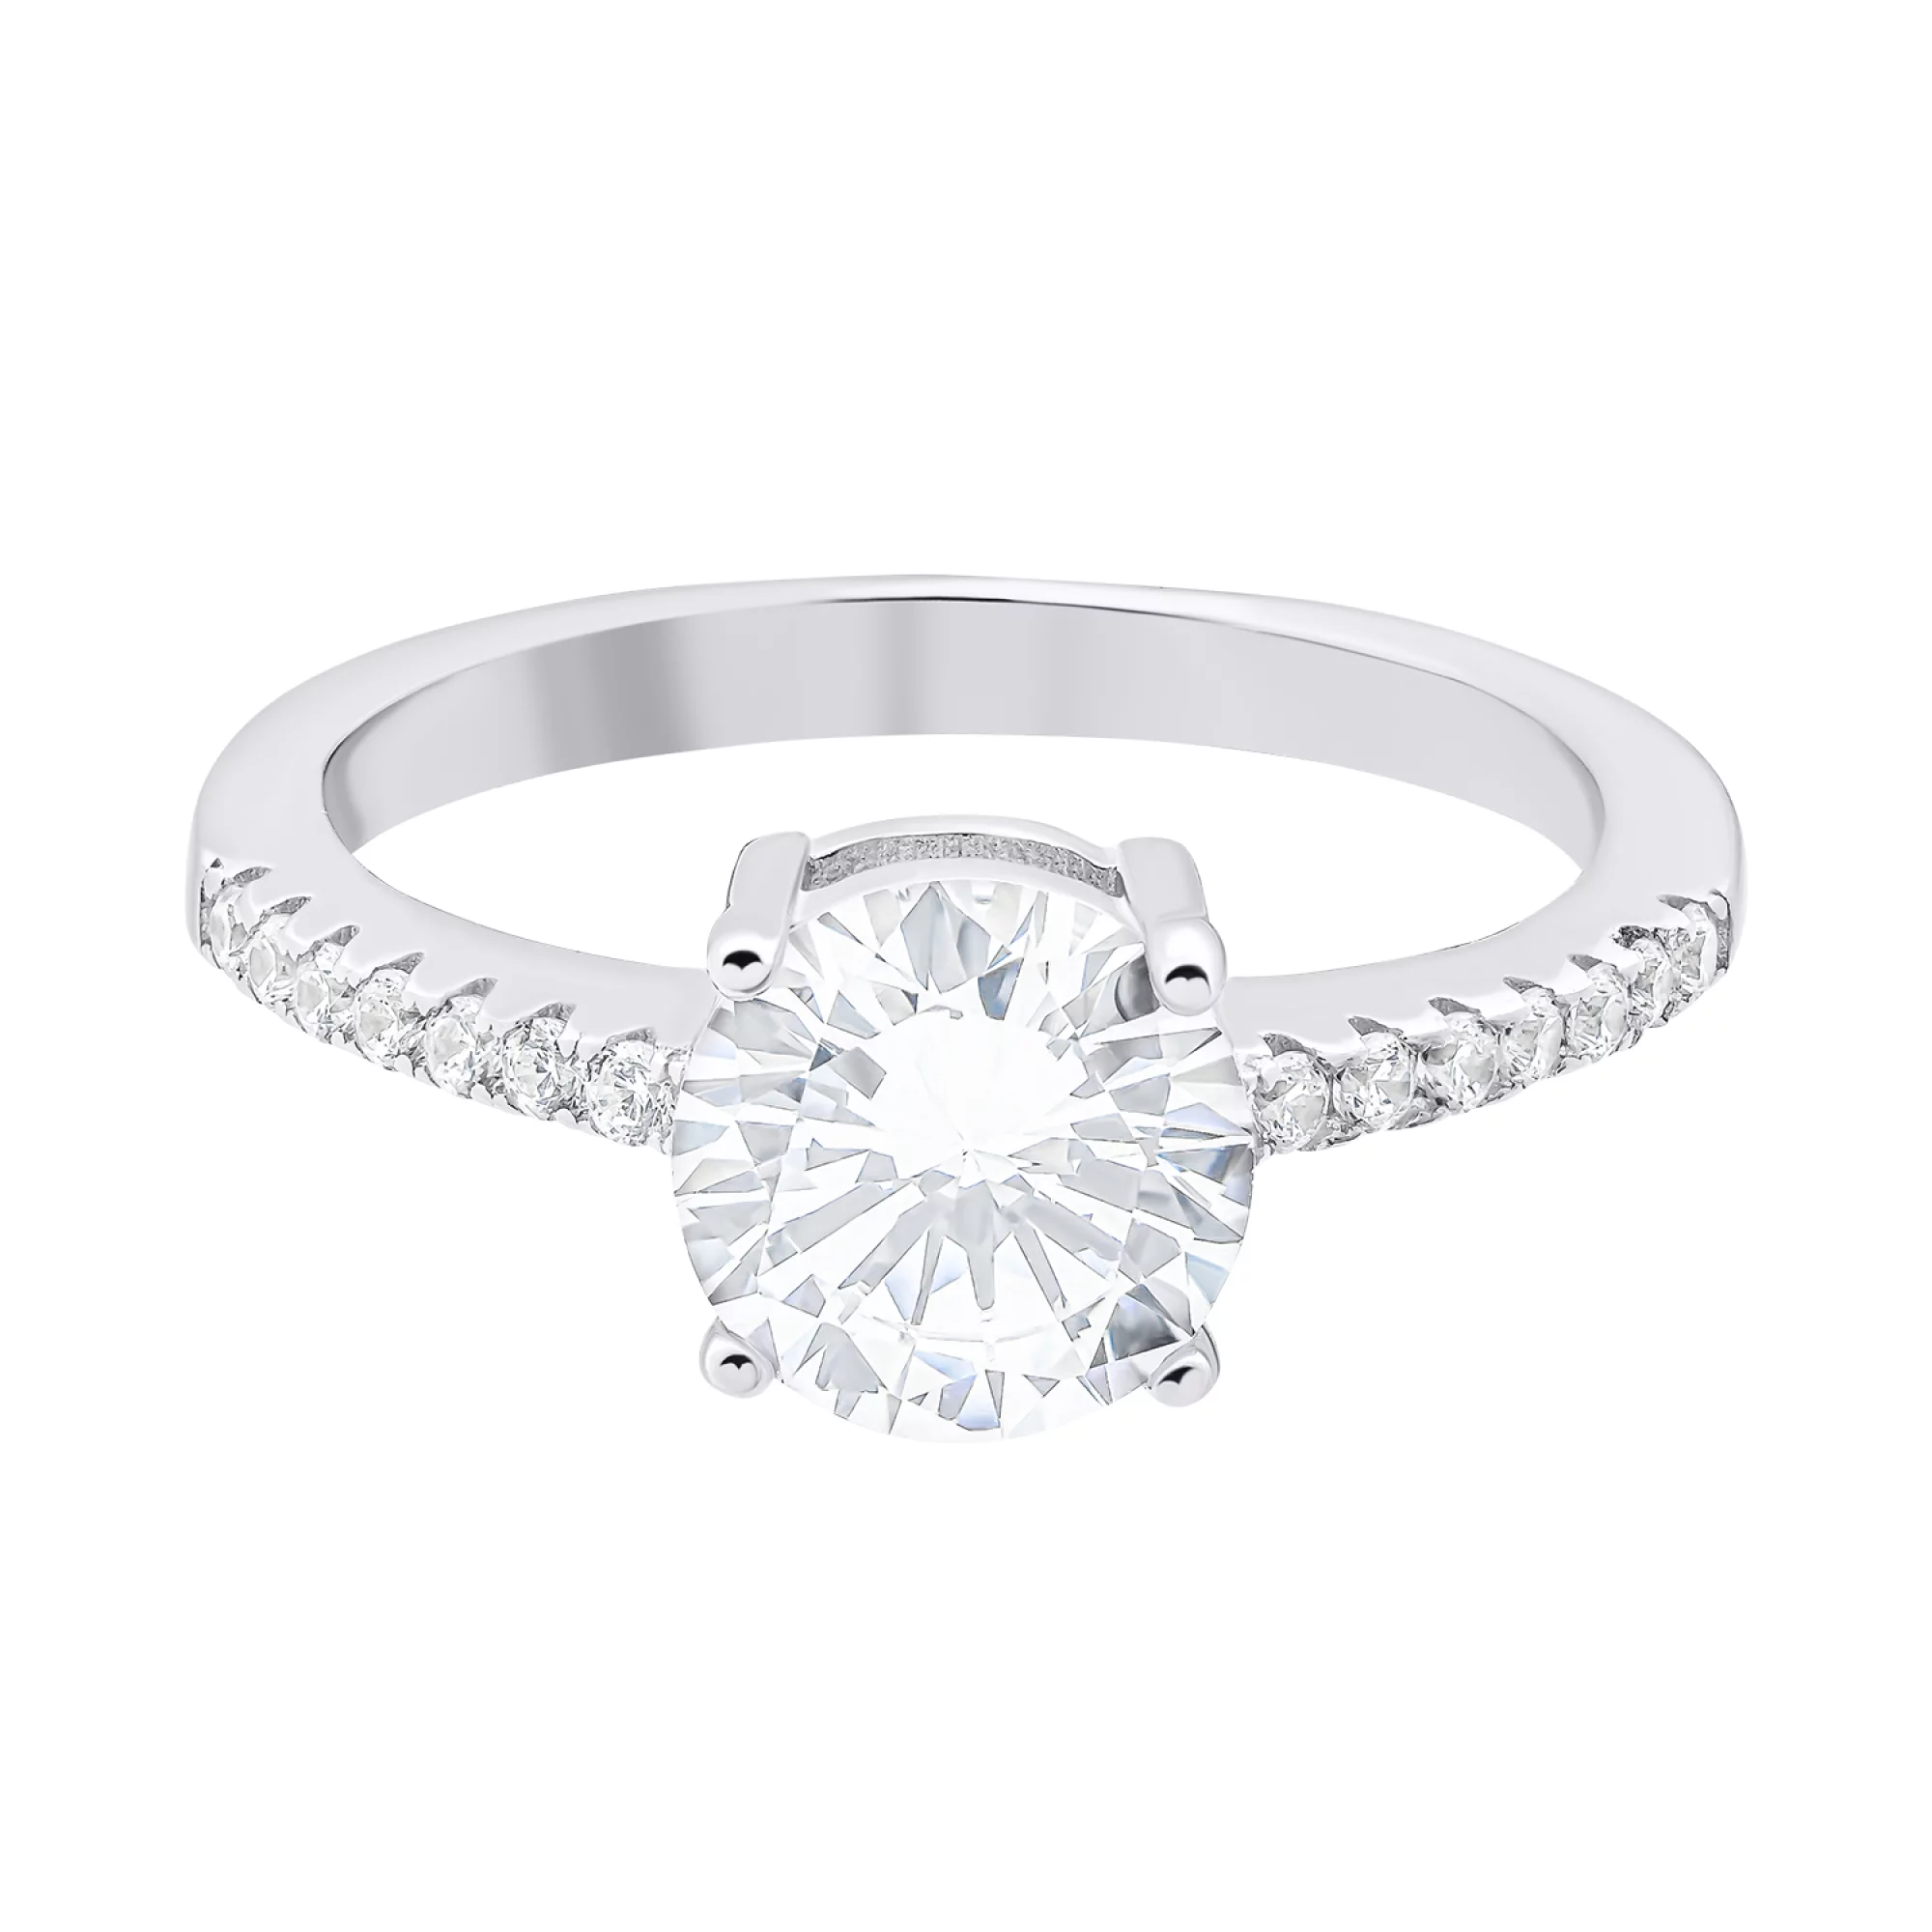 Помолвочное кольцо из серебра с дорожкой фианитов - 1520450 – изображение 2